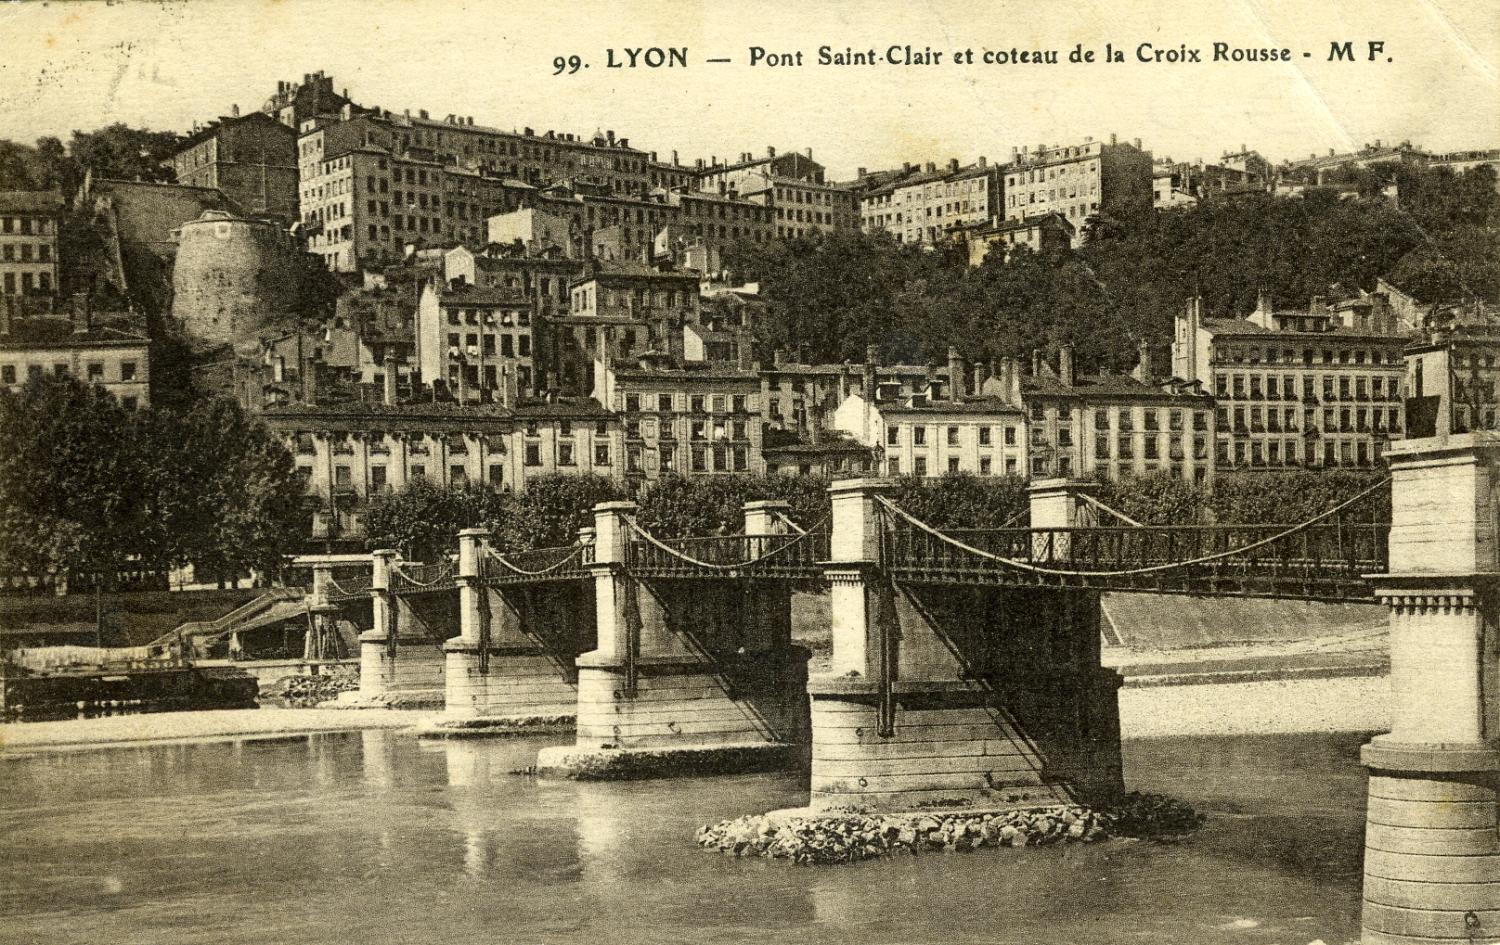 Lyon - Pont Saint-Clair et coteau de la Croix Rousse